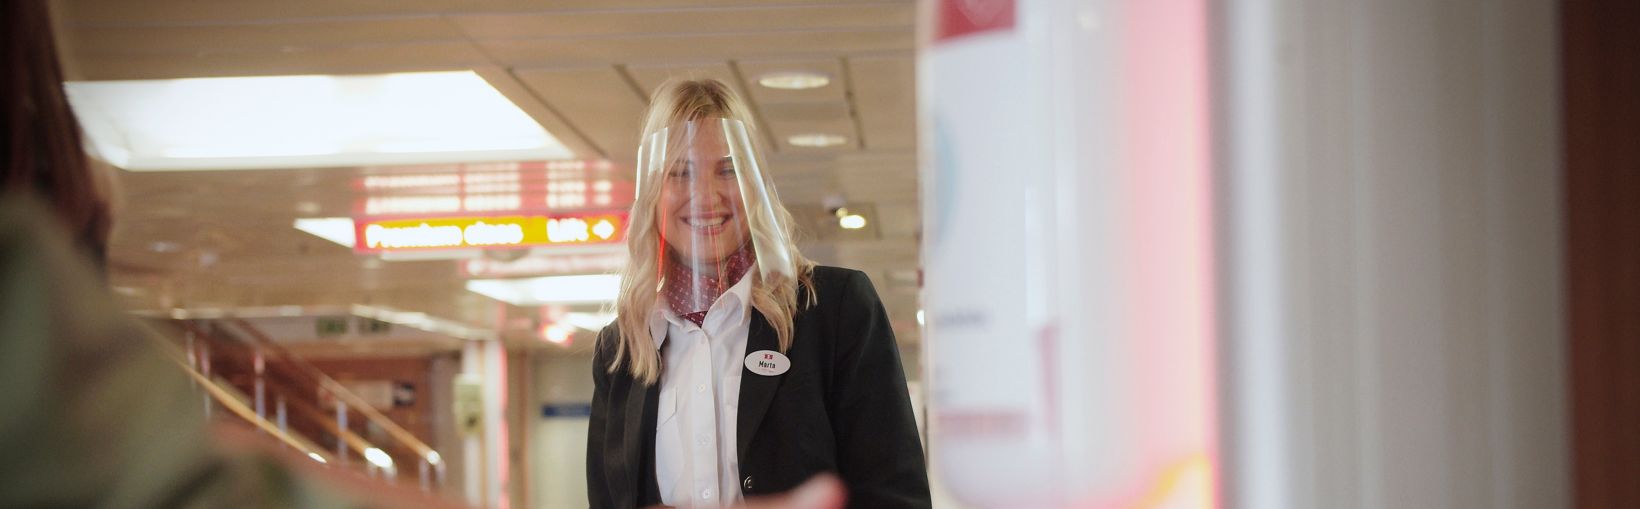 Smilende Stena Line-medarbejder, der ser en passager bruge dispenseren til hånddesinfektion ombord på en færge